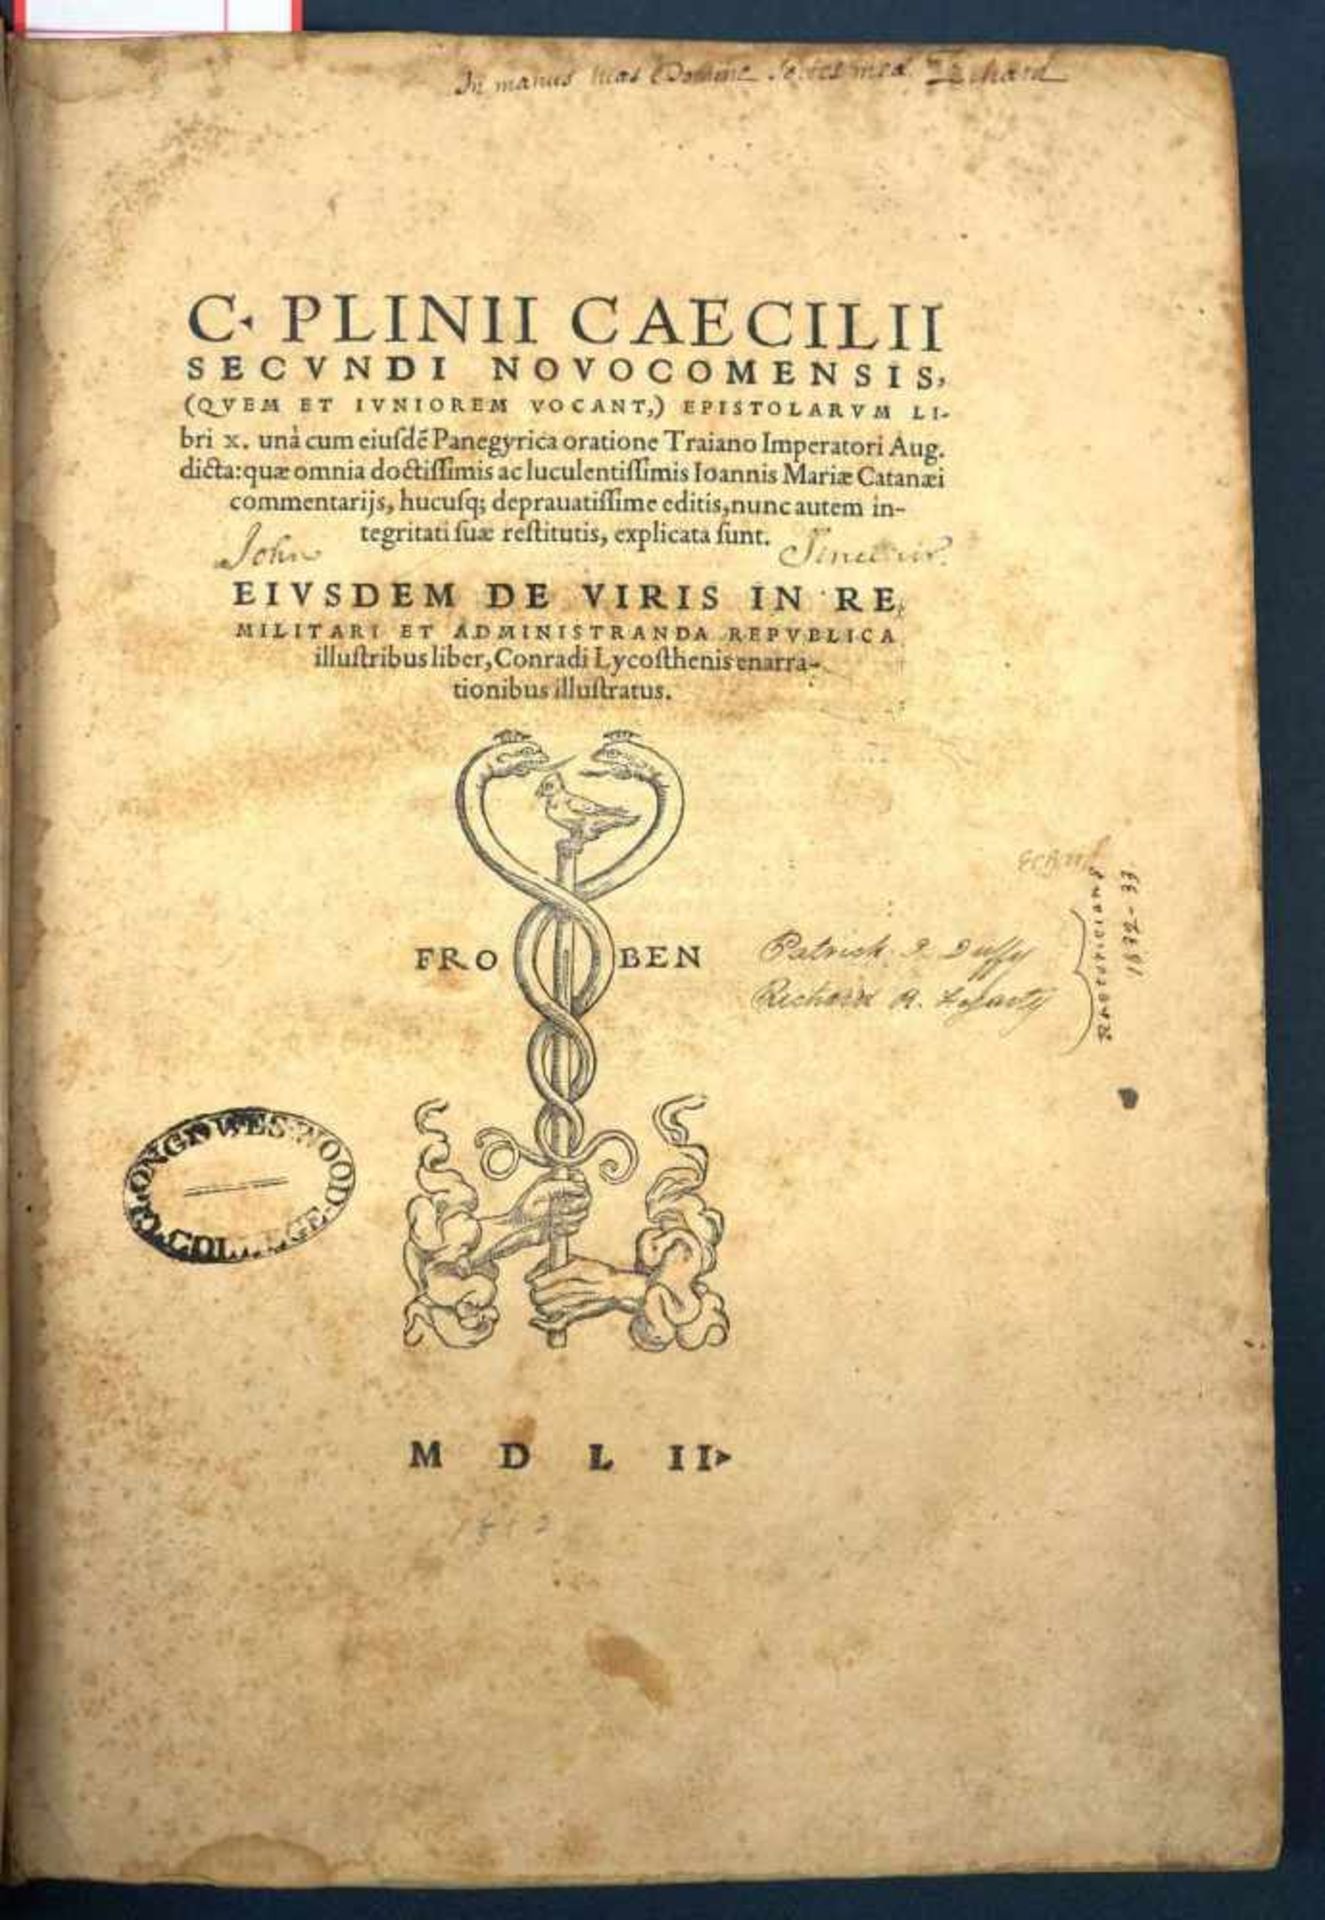 Plinius Caecilius Secundus, Gaius: Epistolarum libri X